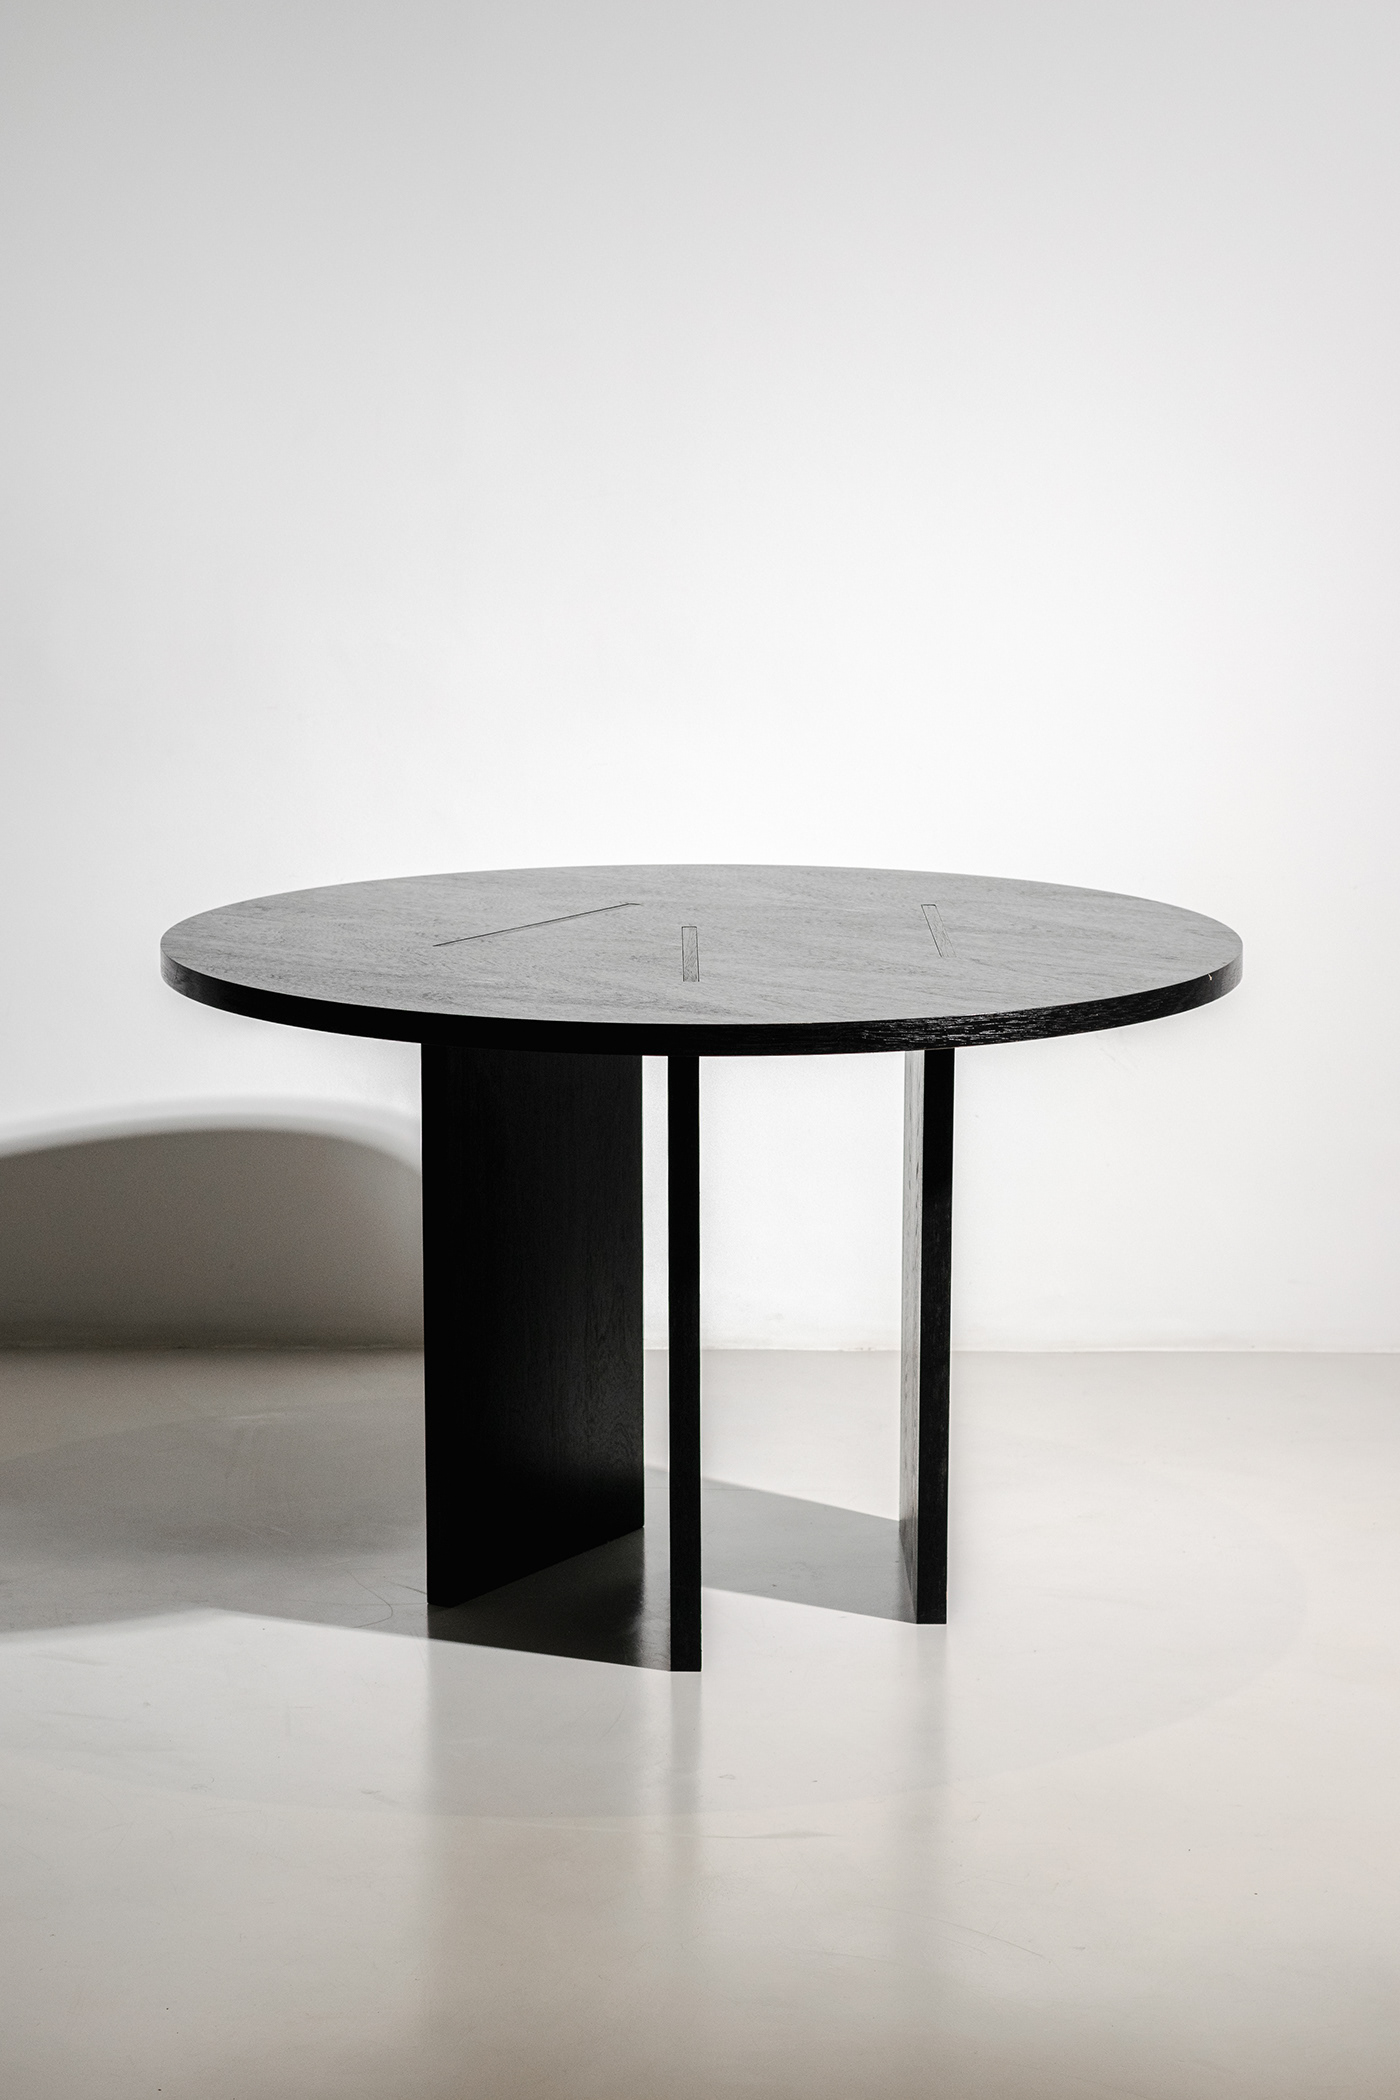 table arquitectura architecture ARQUITETURA design modern minimalist interior design  Interior